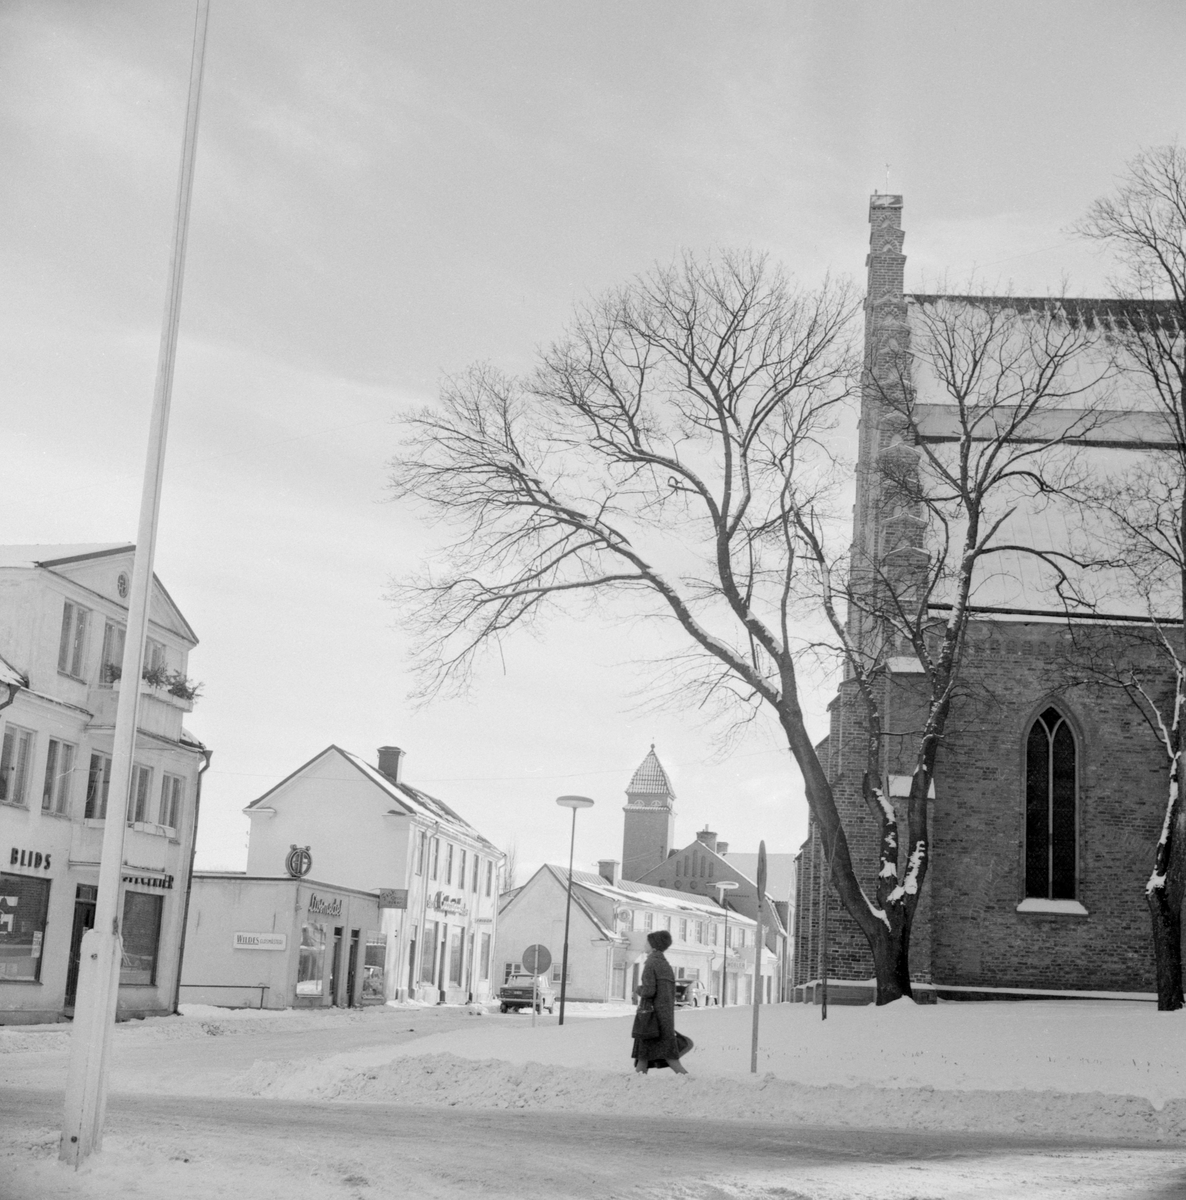 Affärs-och bostadsbebyggelsen längs Östra Kyrkogatan i Skänninge har helt förnyats sedan denna vinterdag 1962.